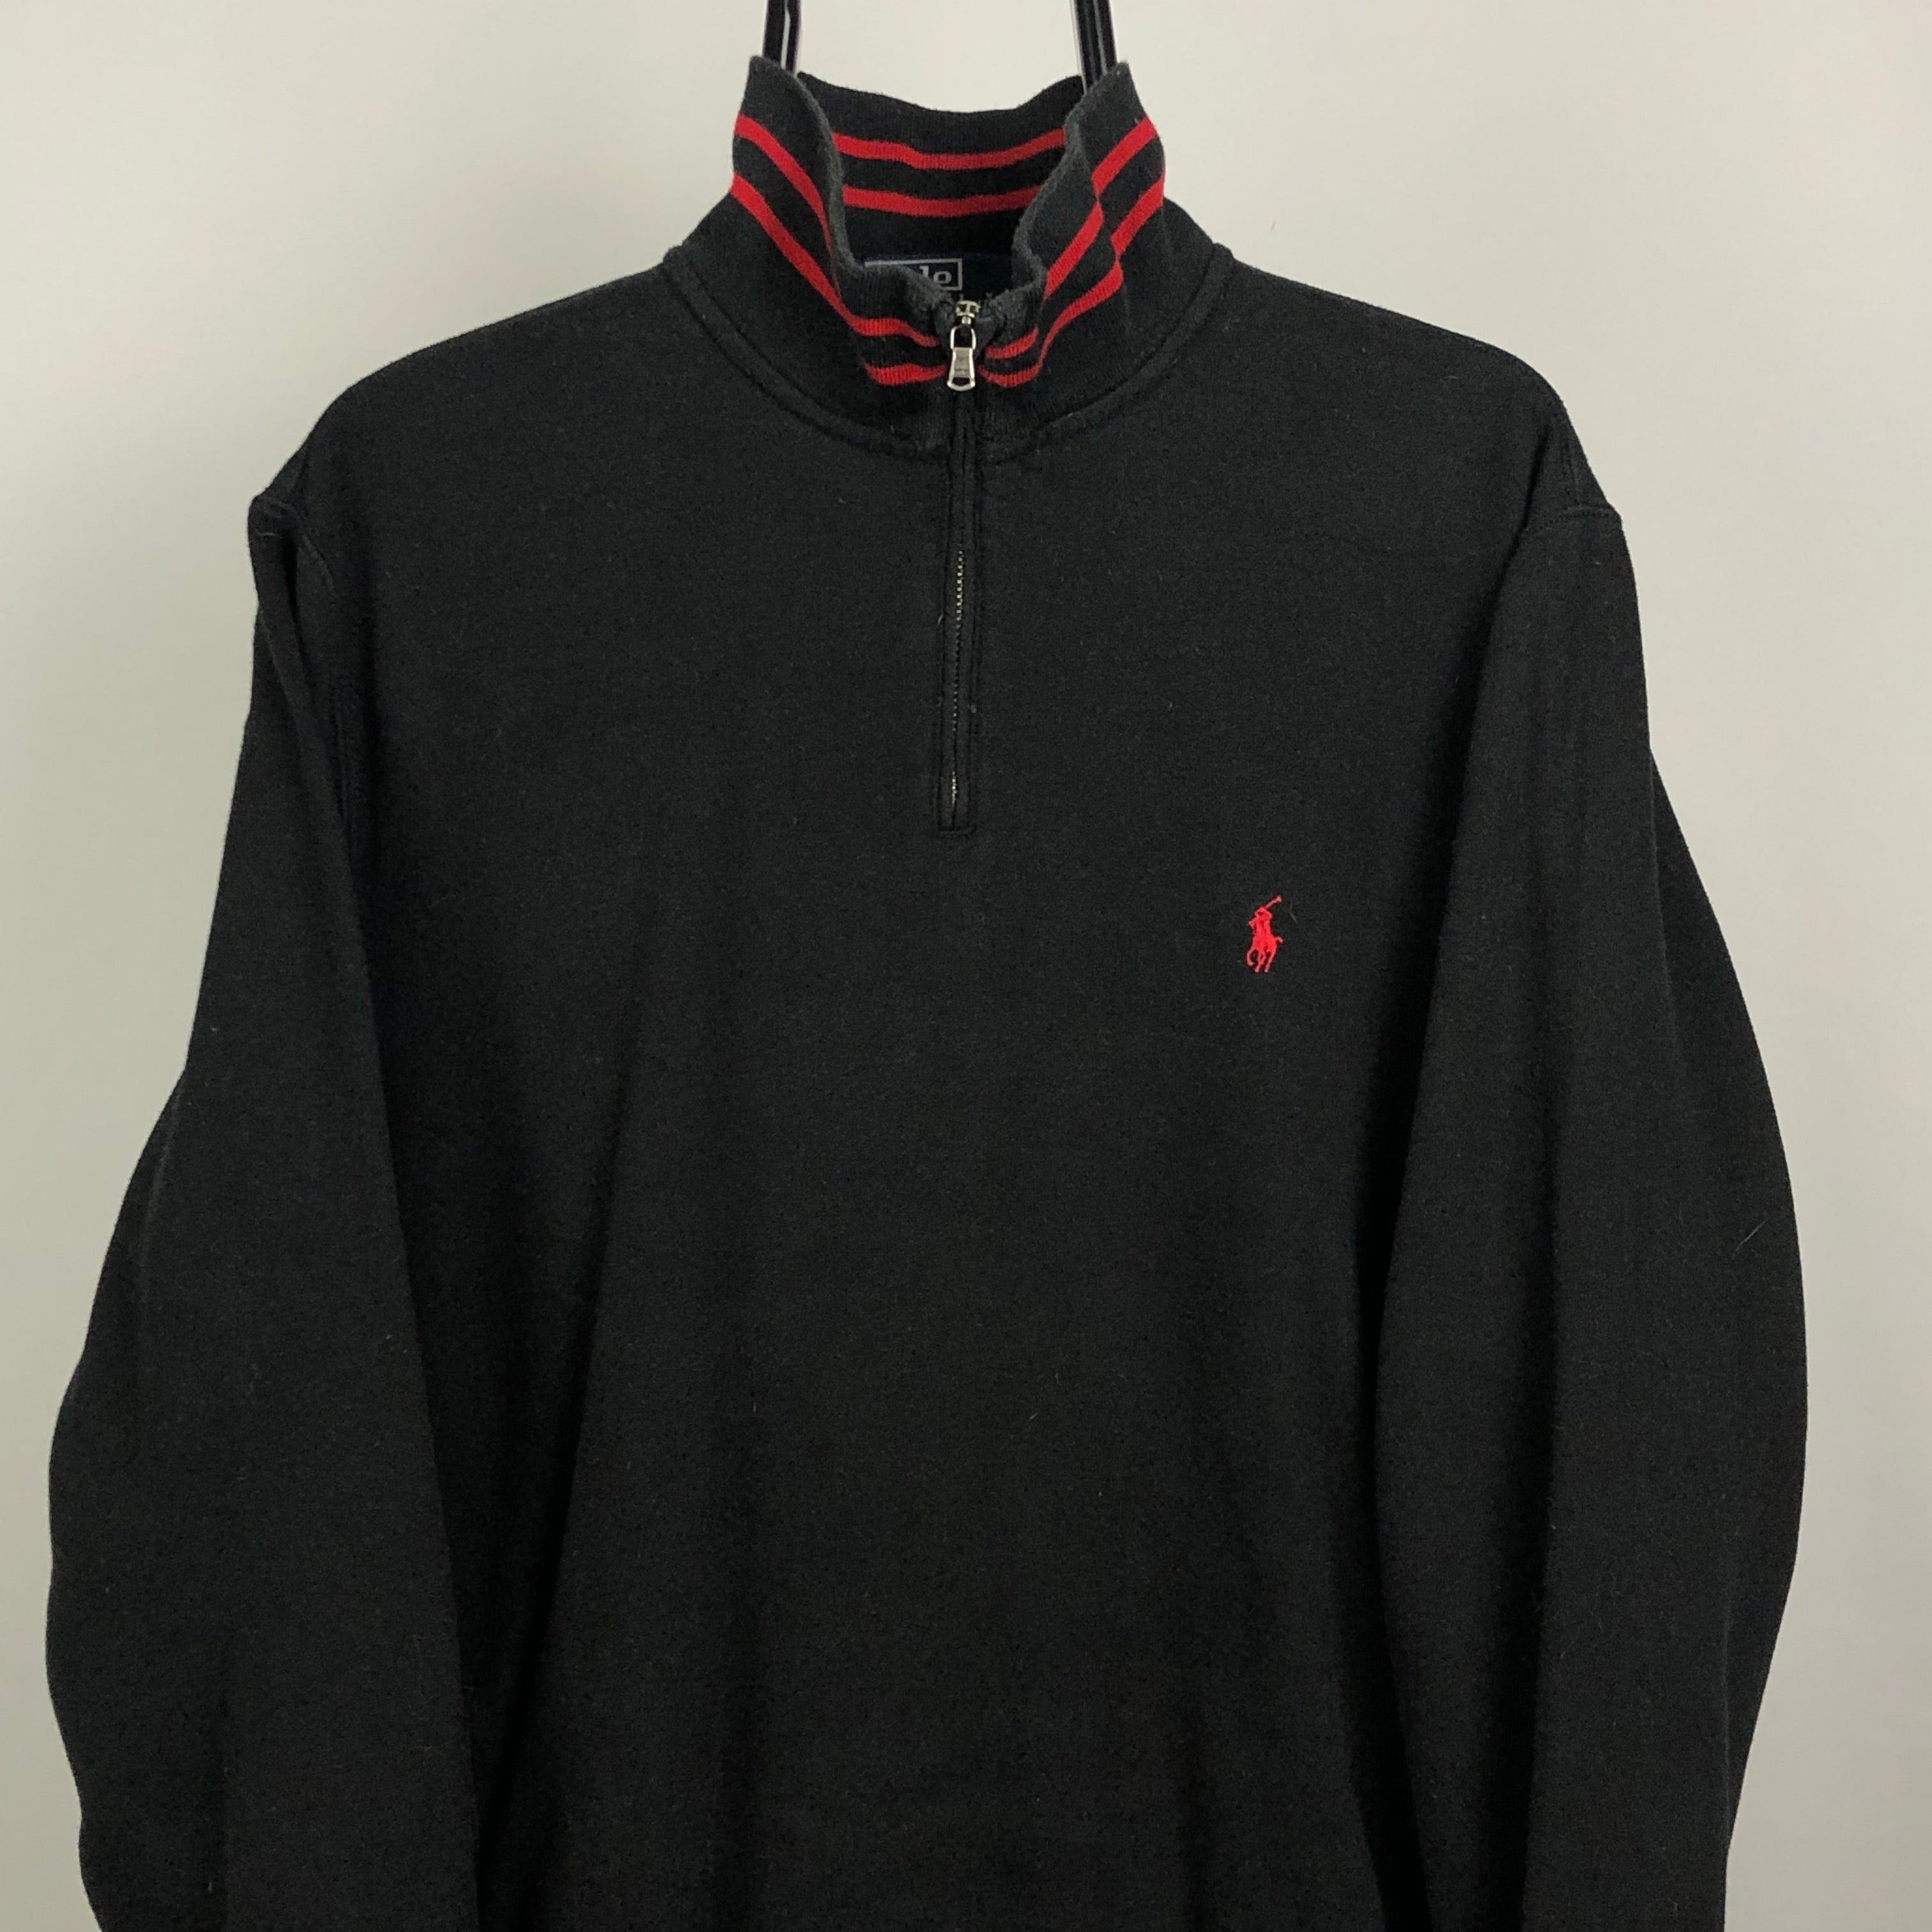 Polo 1/4 Zip Sweatshirt in Black/Red - Men's Medium/Women's Large ...